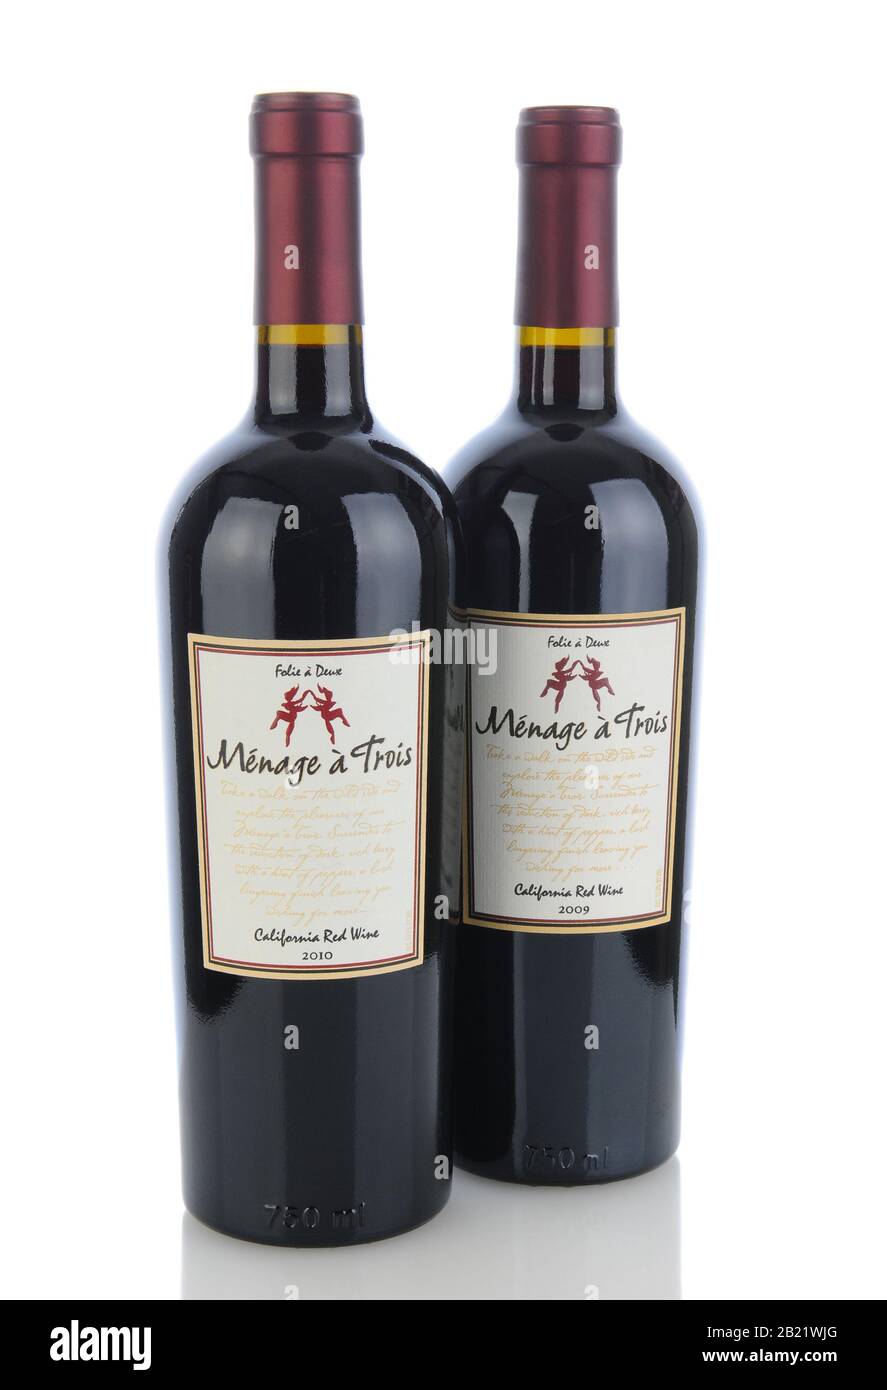 Irvine, CA - 11 gennaio 2013: Due bottiglie da 750 ml di vino rosso Menage a Trois California. Prodotto dalla premiata cantina Folie a Deux a Sonoma. Foto Stock